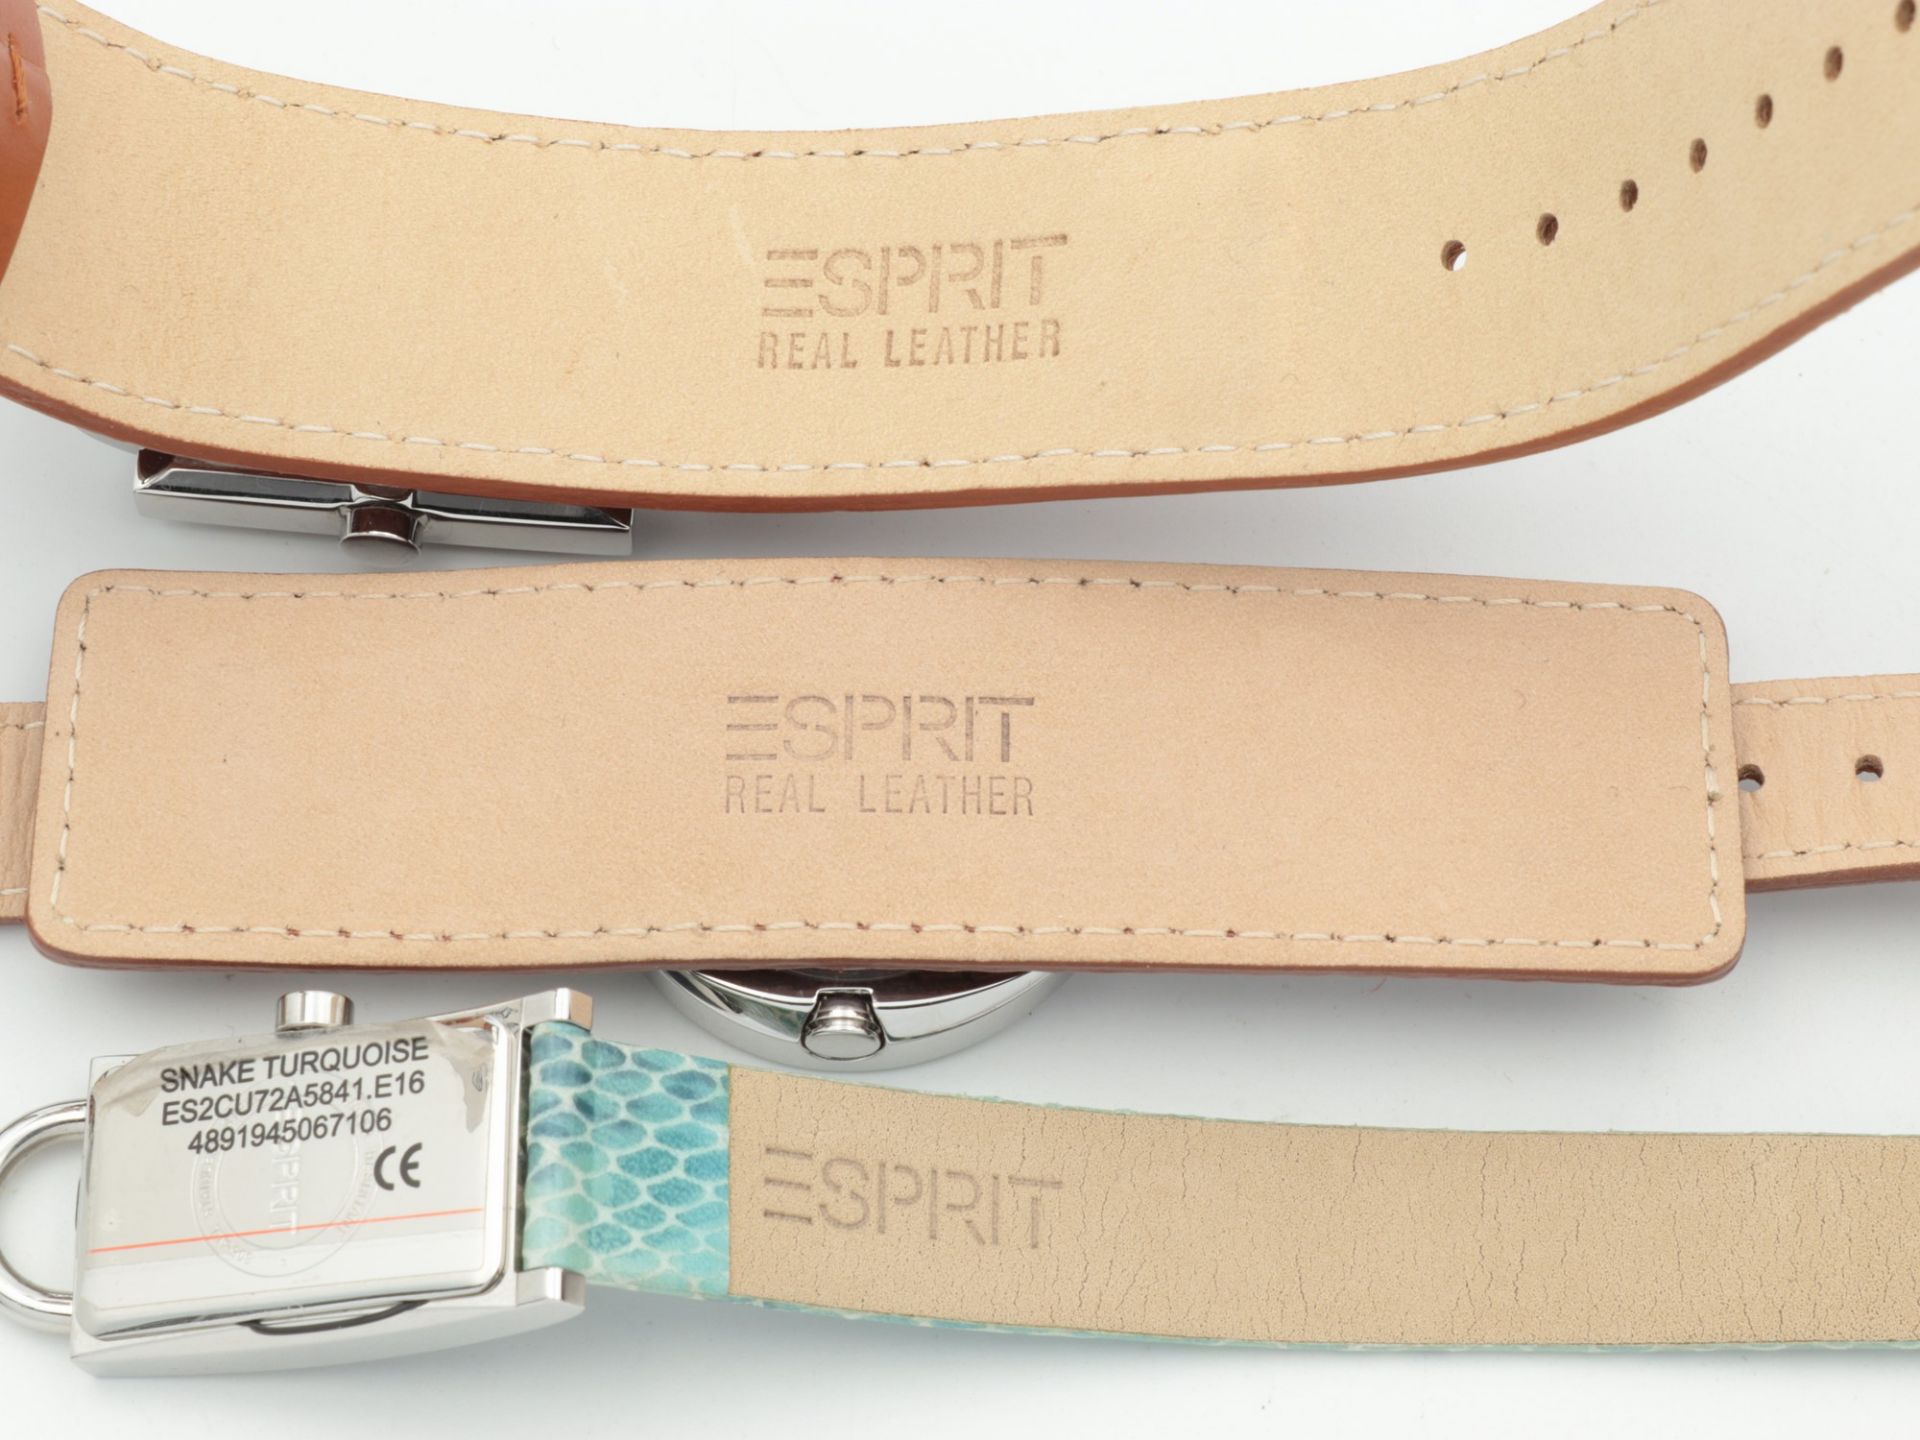 Esprit - Damenarmbanduhren 3 St., versch. Formen, 2x mit Lederarmband, 1x Knebelschließe, 2x - Image 3 of 4